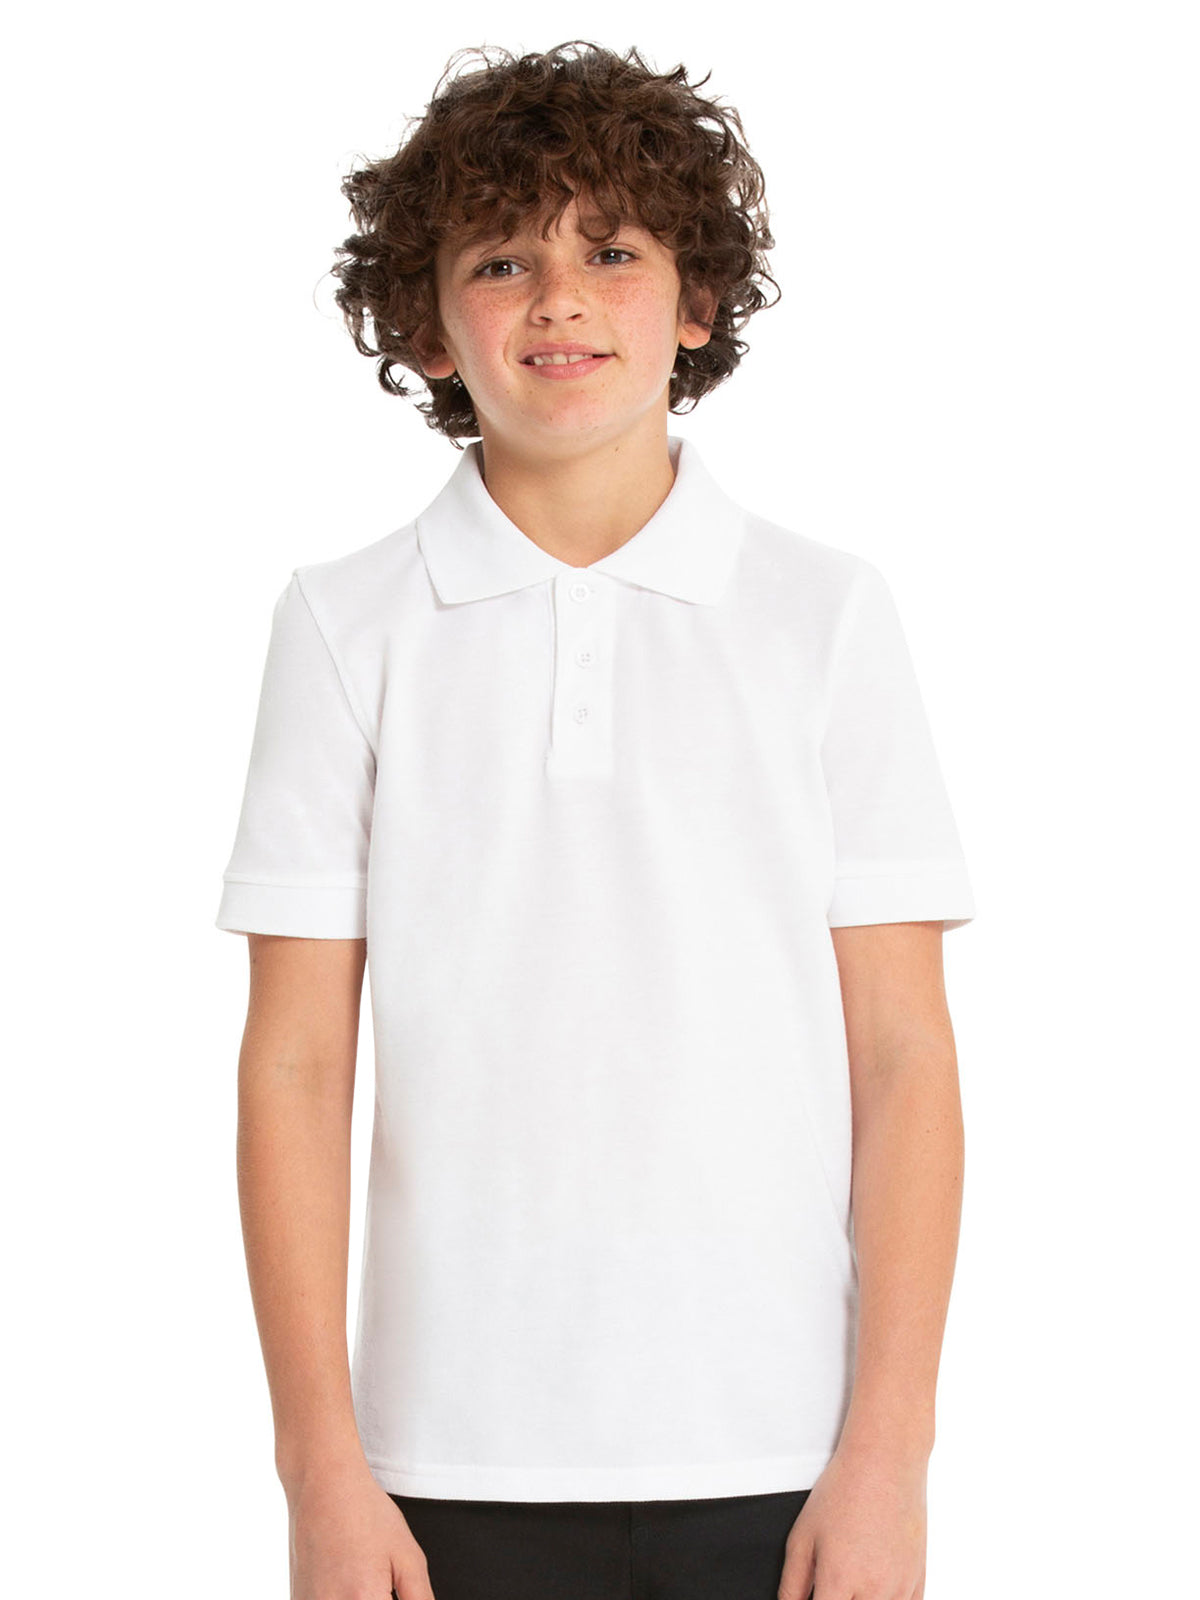 Unisex Youth Short Sleeve Pique Polo - 68112 - White